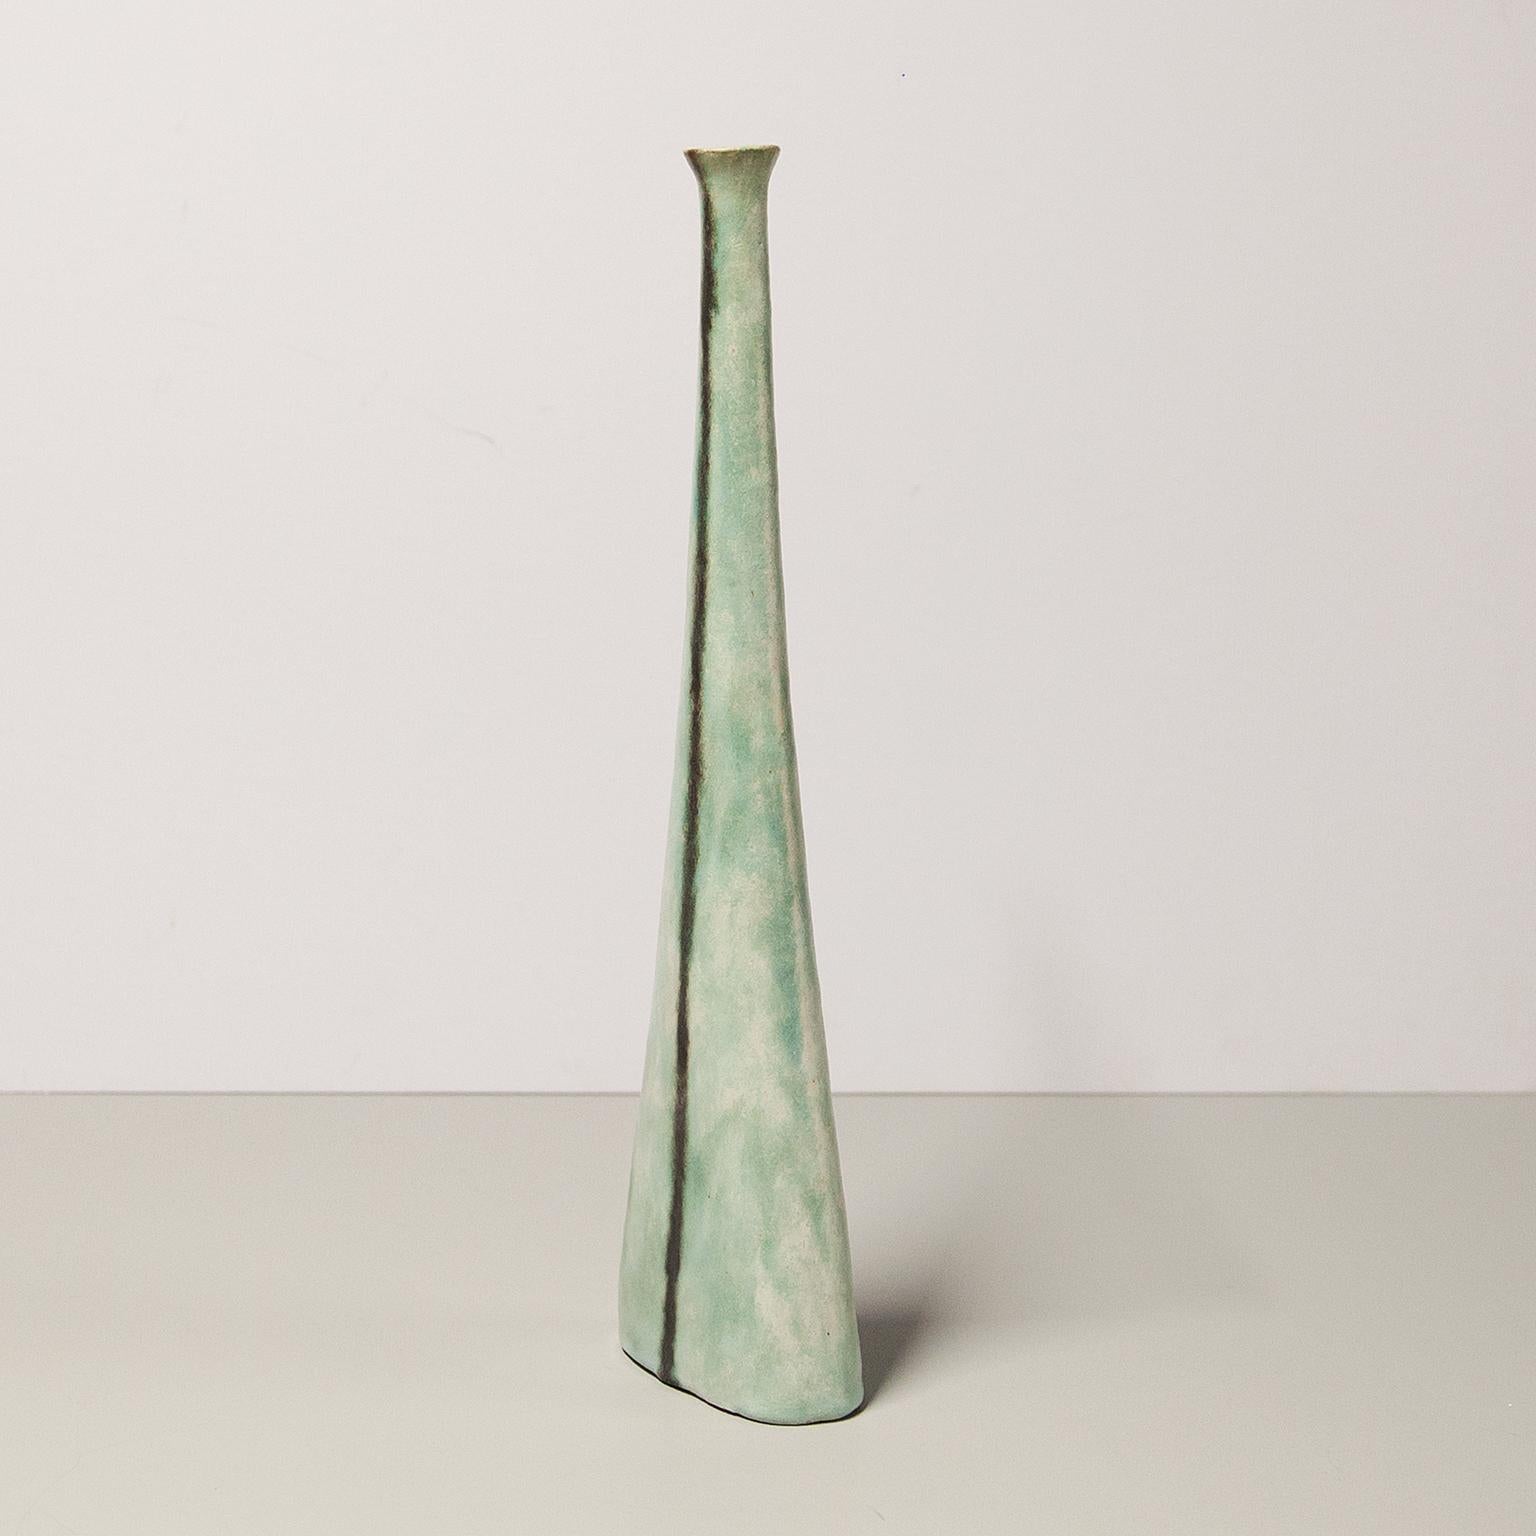 Bruno Gambone énorme vase en céramique en grès émaillé noir et vert, Italie 1980, signé Gambone Italie.